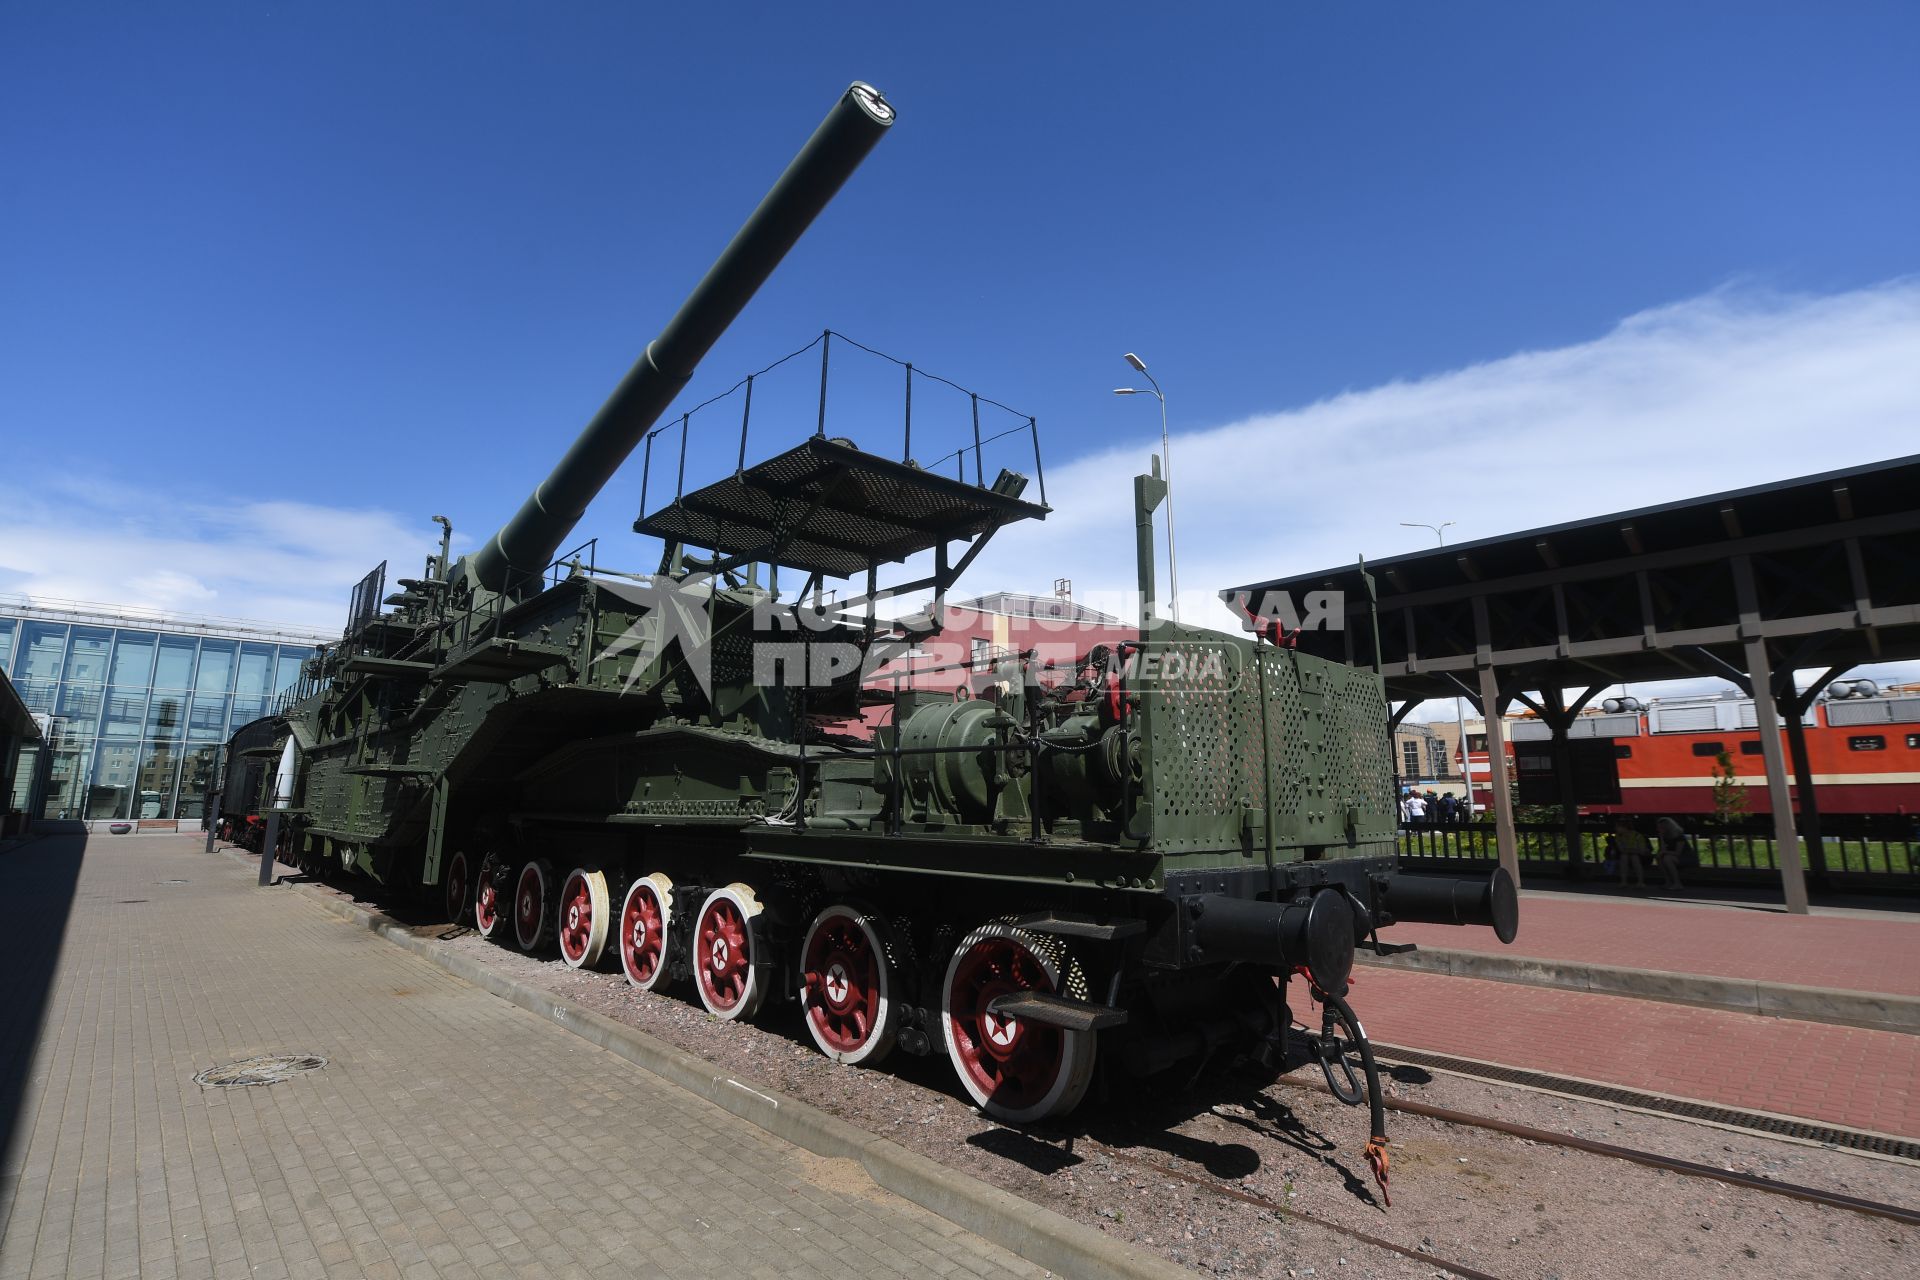 Санкт-Петербург. Железнодорожная артиллерийская установка ТМ-3-12 на территории Музея железных дорог России.